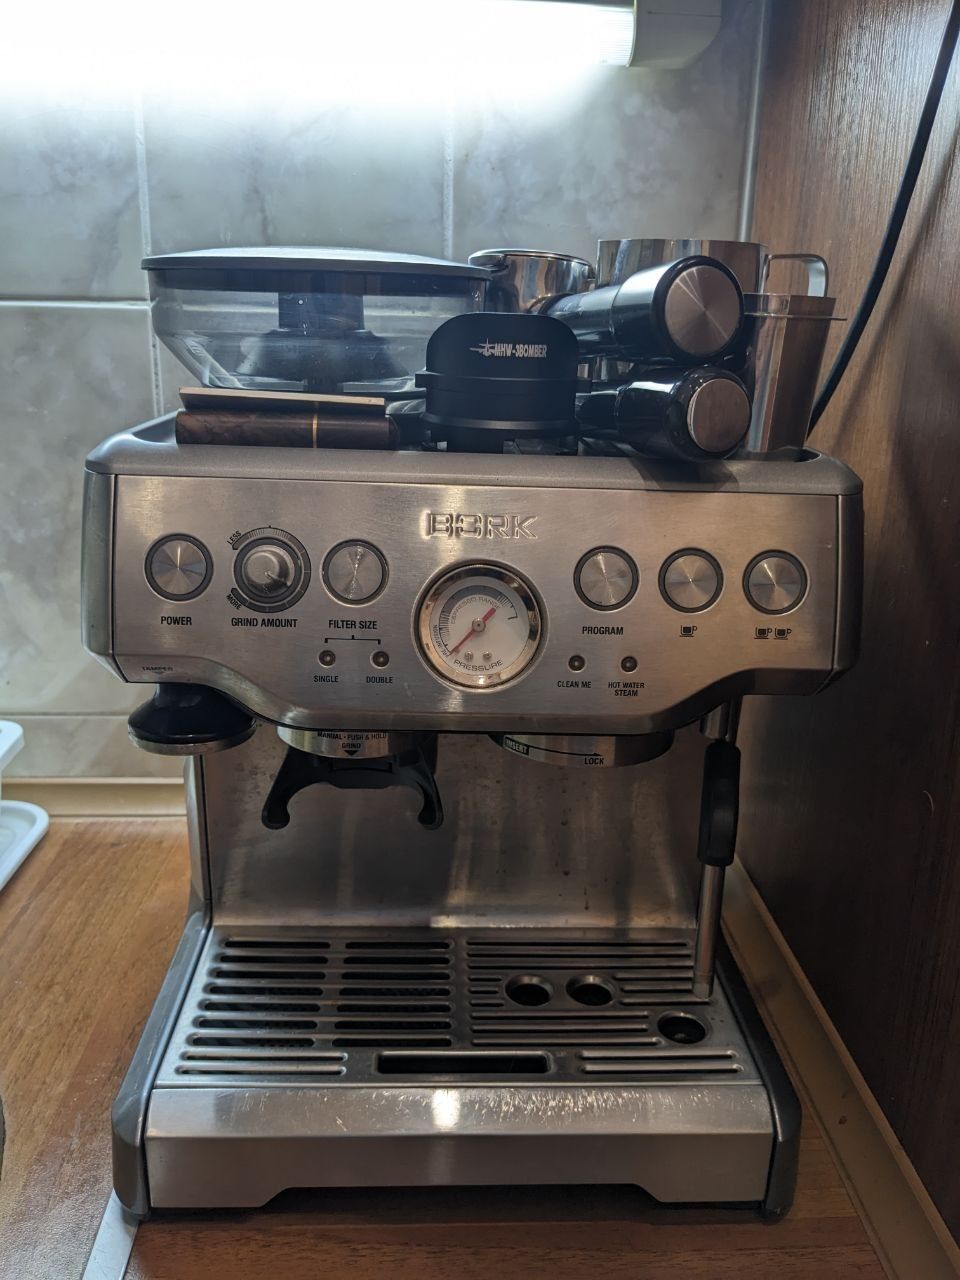 Кофемашина, Кофемолка, Breville Barista Express, Bork C804, Торг